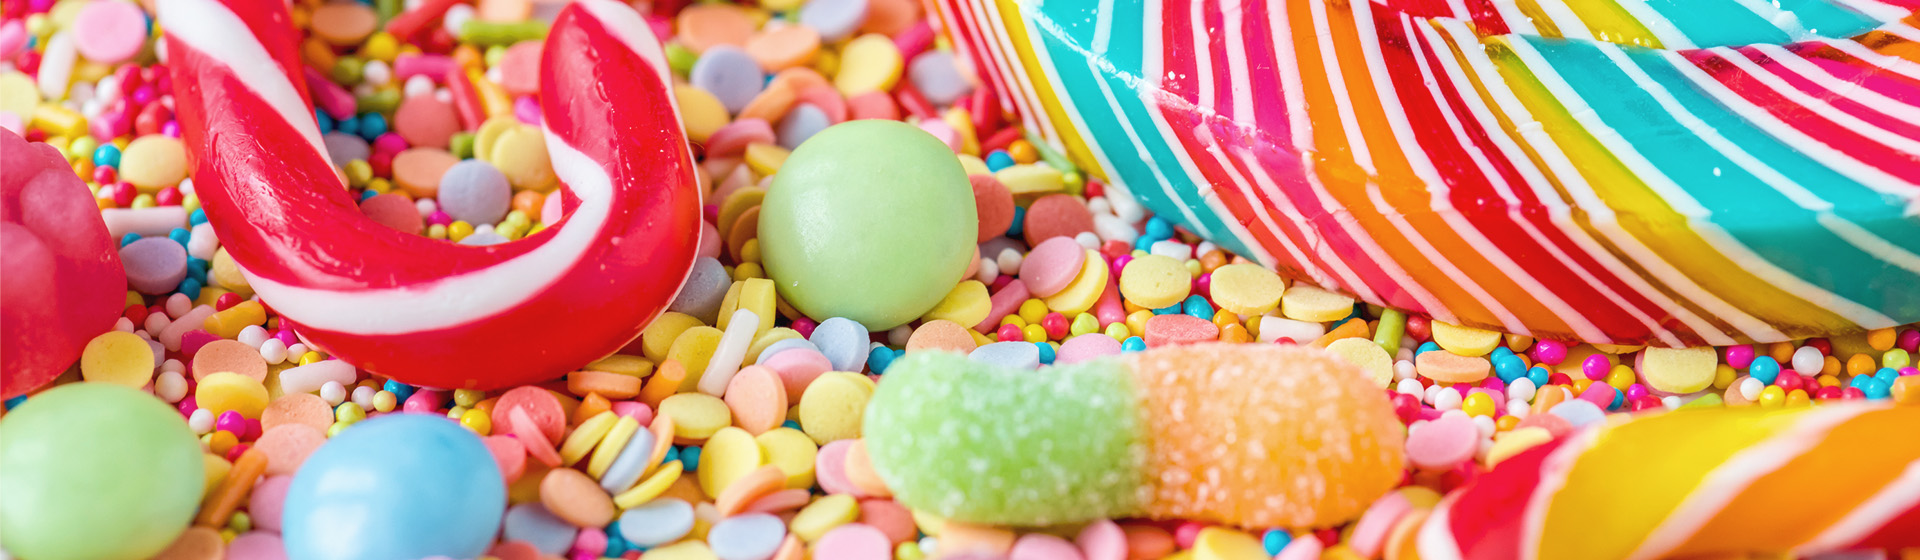 17 Popular Sugar-Packed Kids' Foods